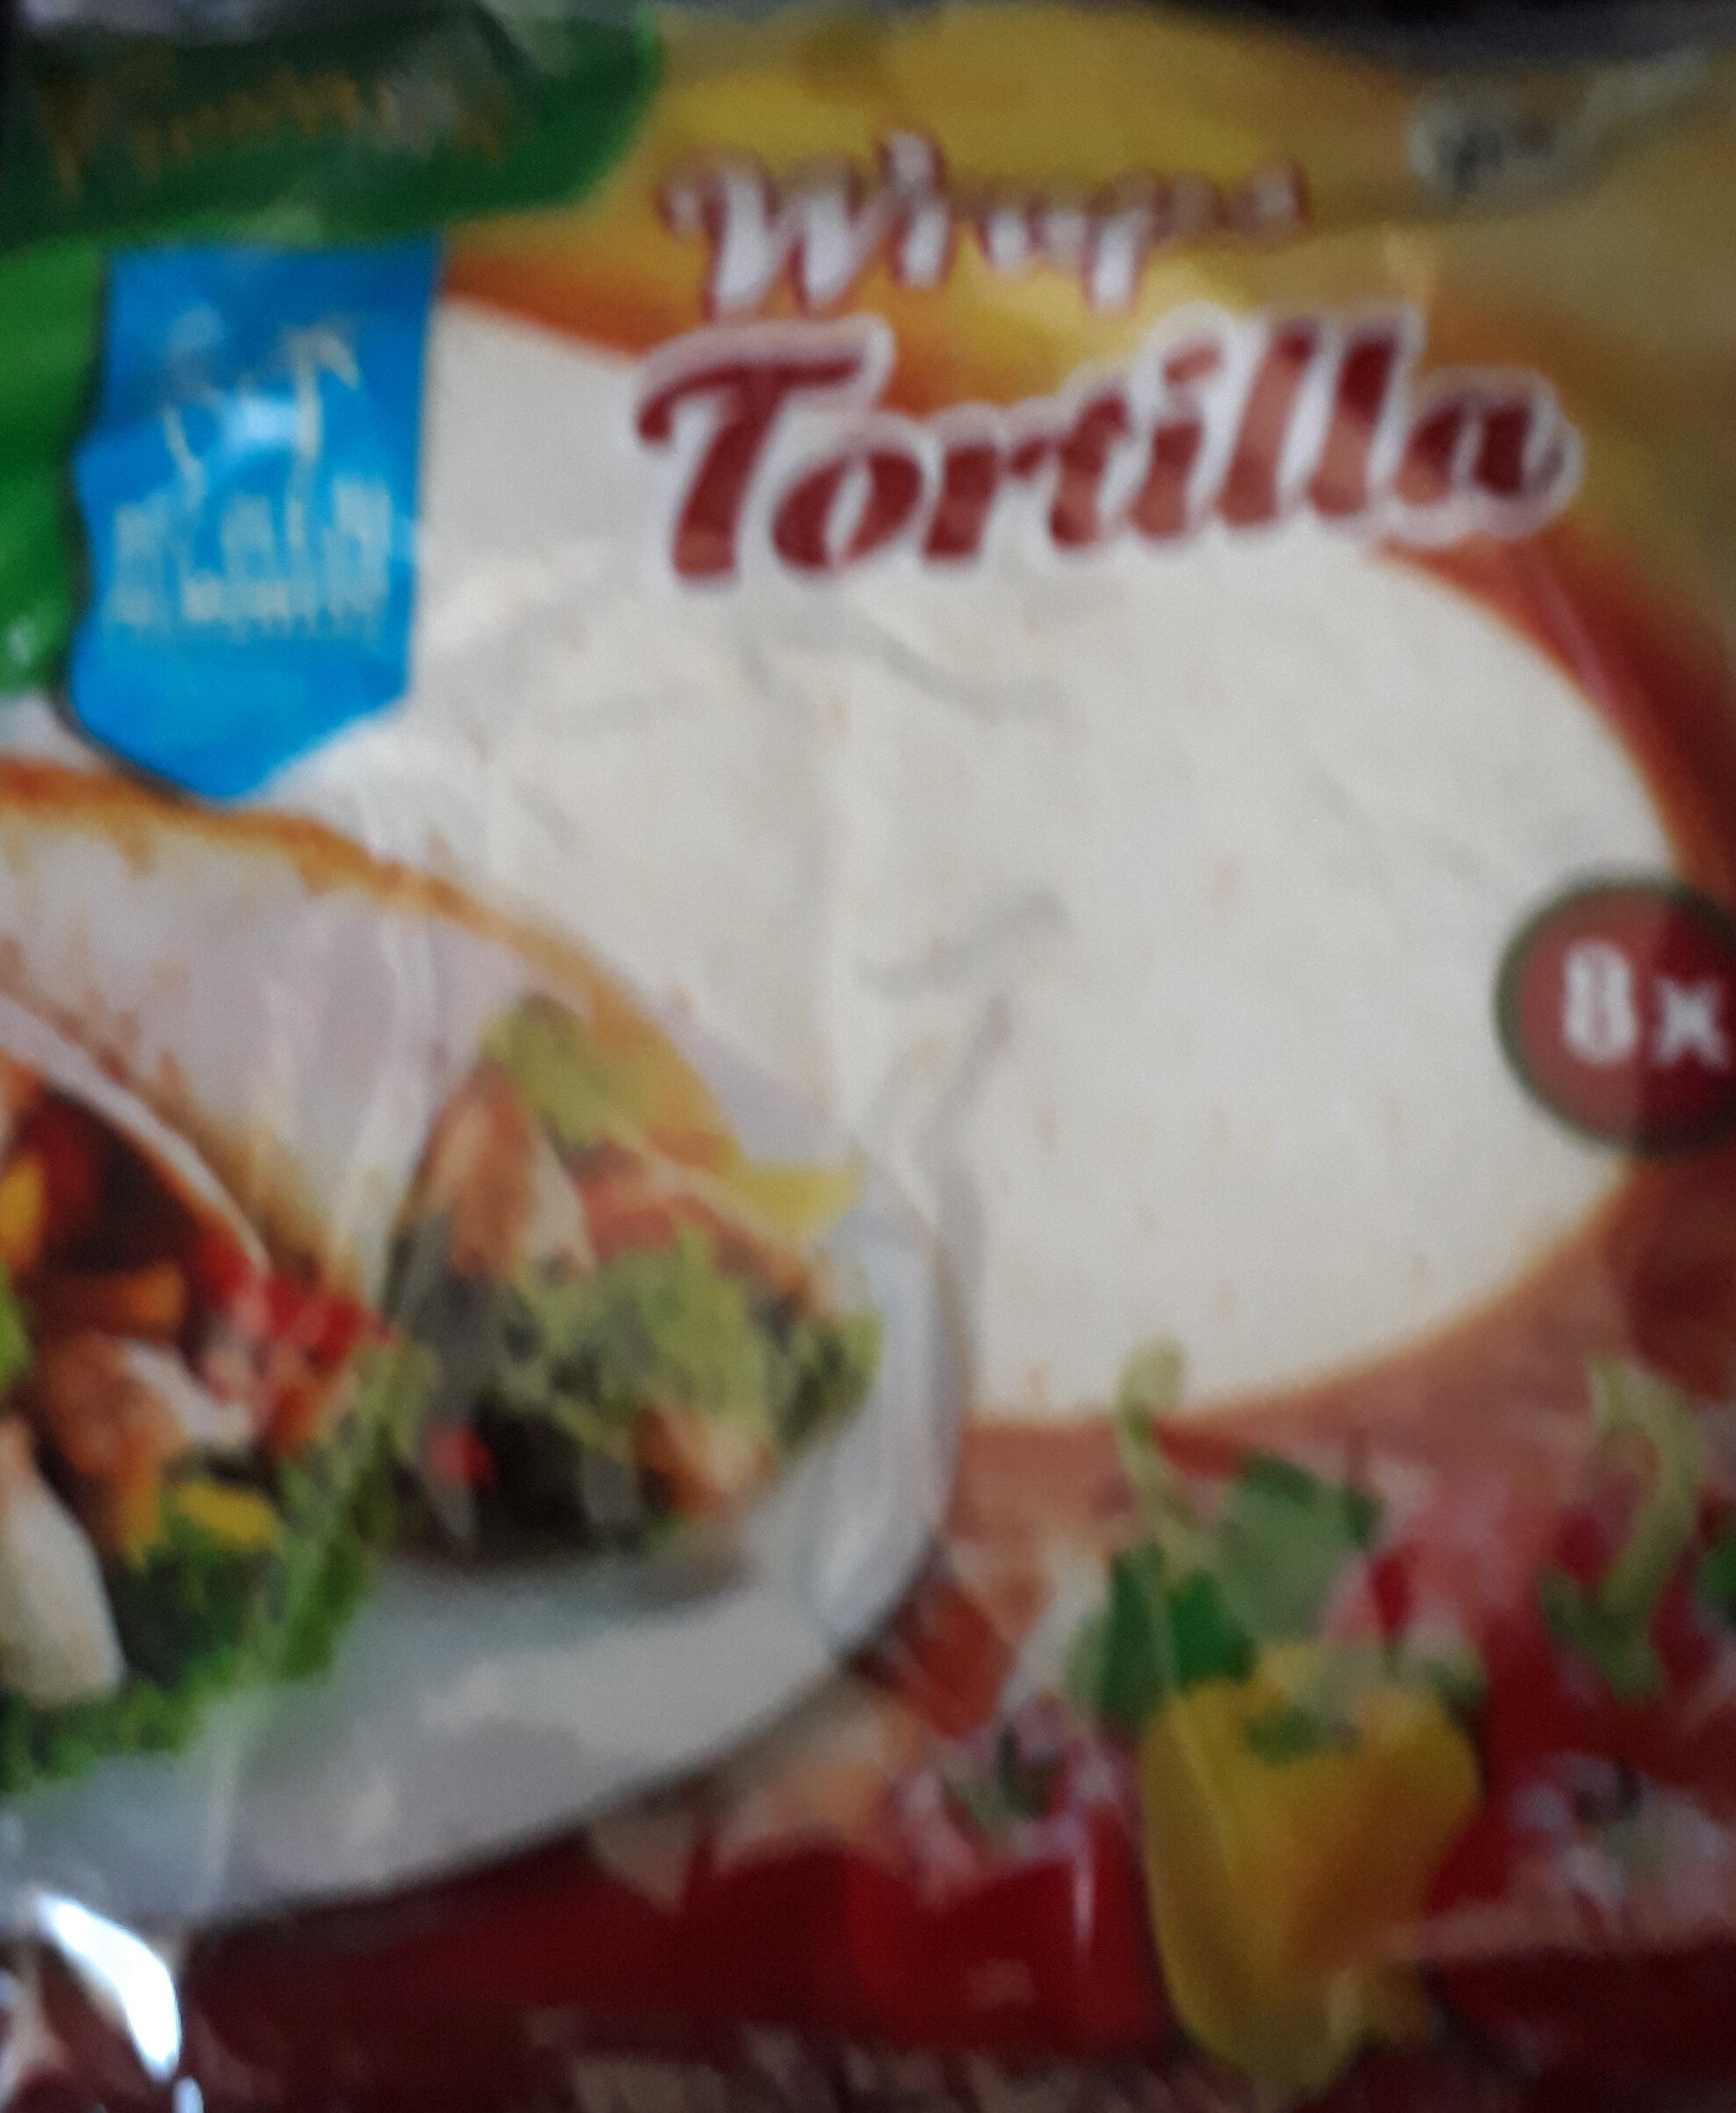 tortilla - Product - pl